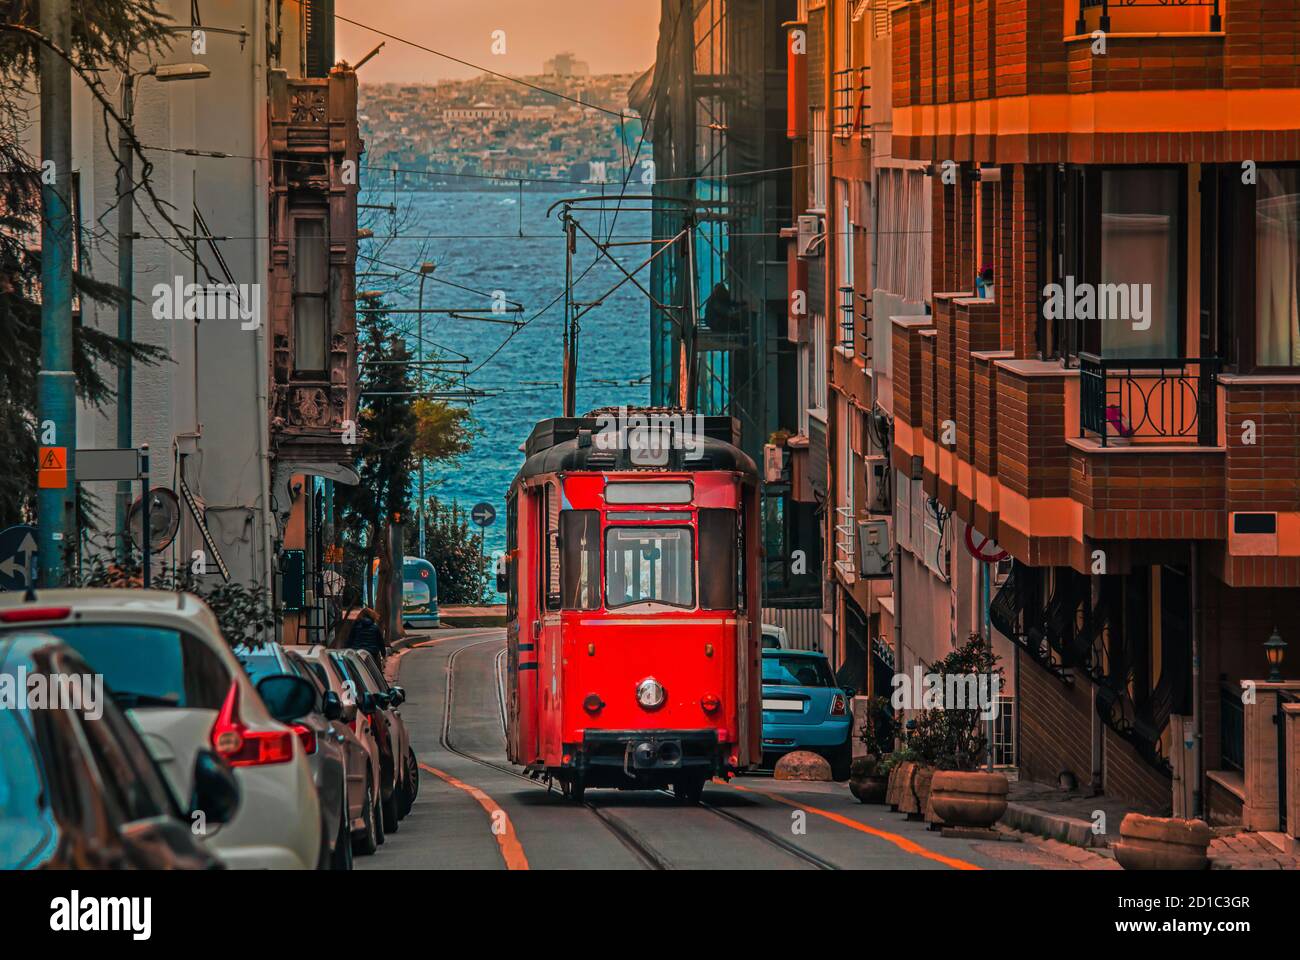 Alte nostalgische Straßenbahn, die durch die Straßen des Kadikoy-Viertels auf der asiatischen Seite Istanbuls fährt. Das trendige Viertel ist voller farbenfroher Gebäude. Marmarameer. Stockfoto